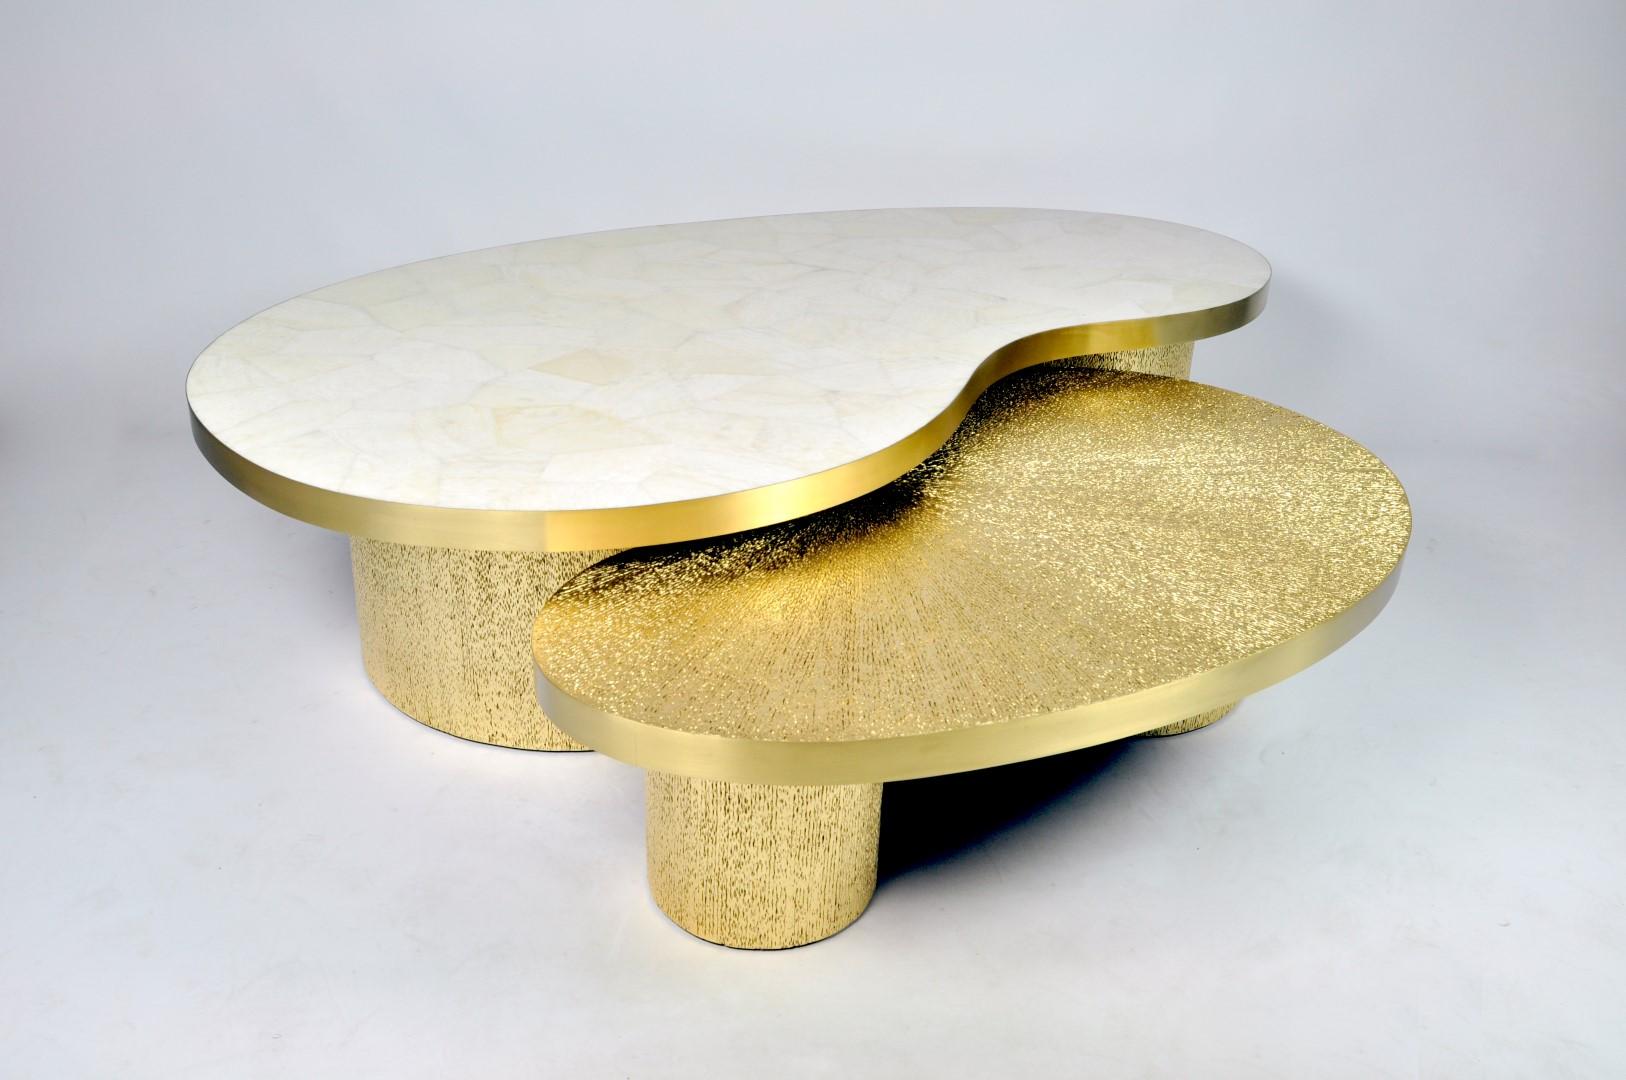 Ce lot de 2 tables basses en forme de haricot est composé de différents matériaux.
La table la plus haute a un plateau en cristal de roche blanc et la table la plus basse a un plateau en marqueterie de fibres végétales dorées.
Les plateaux des